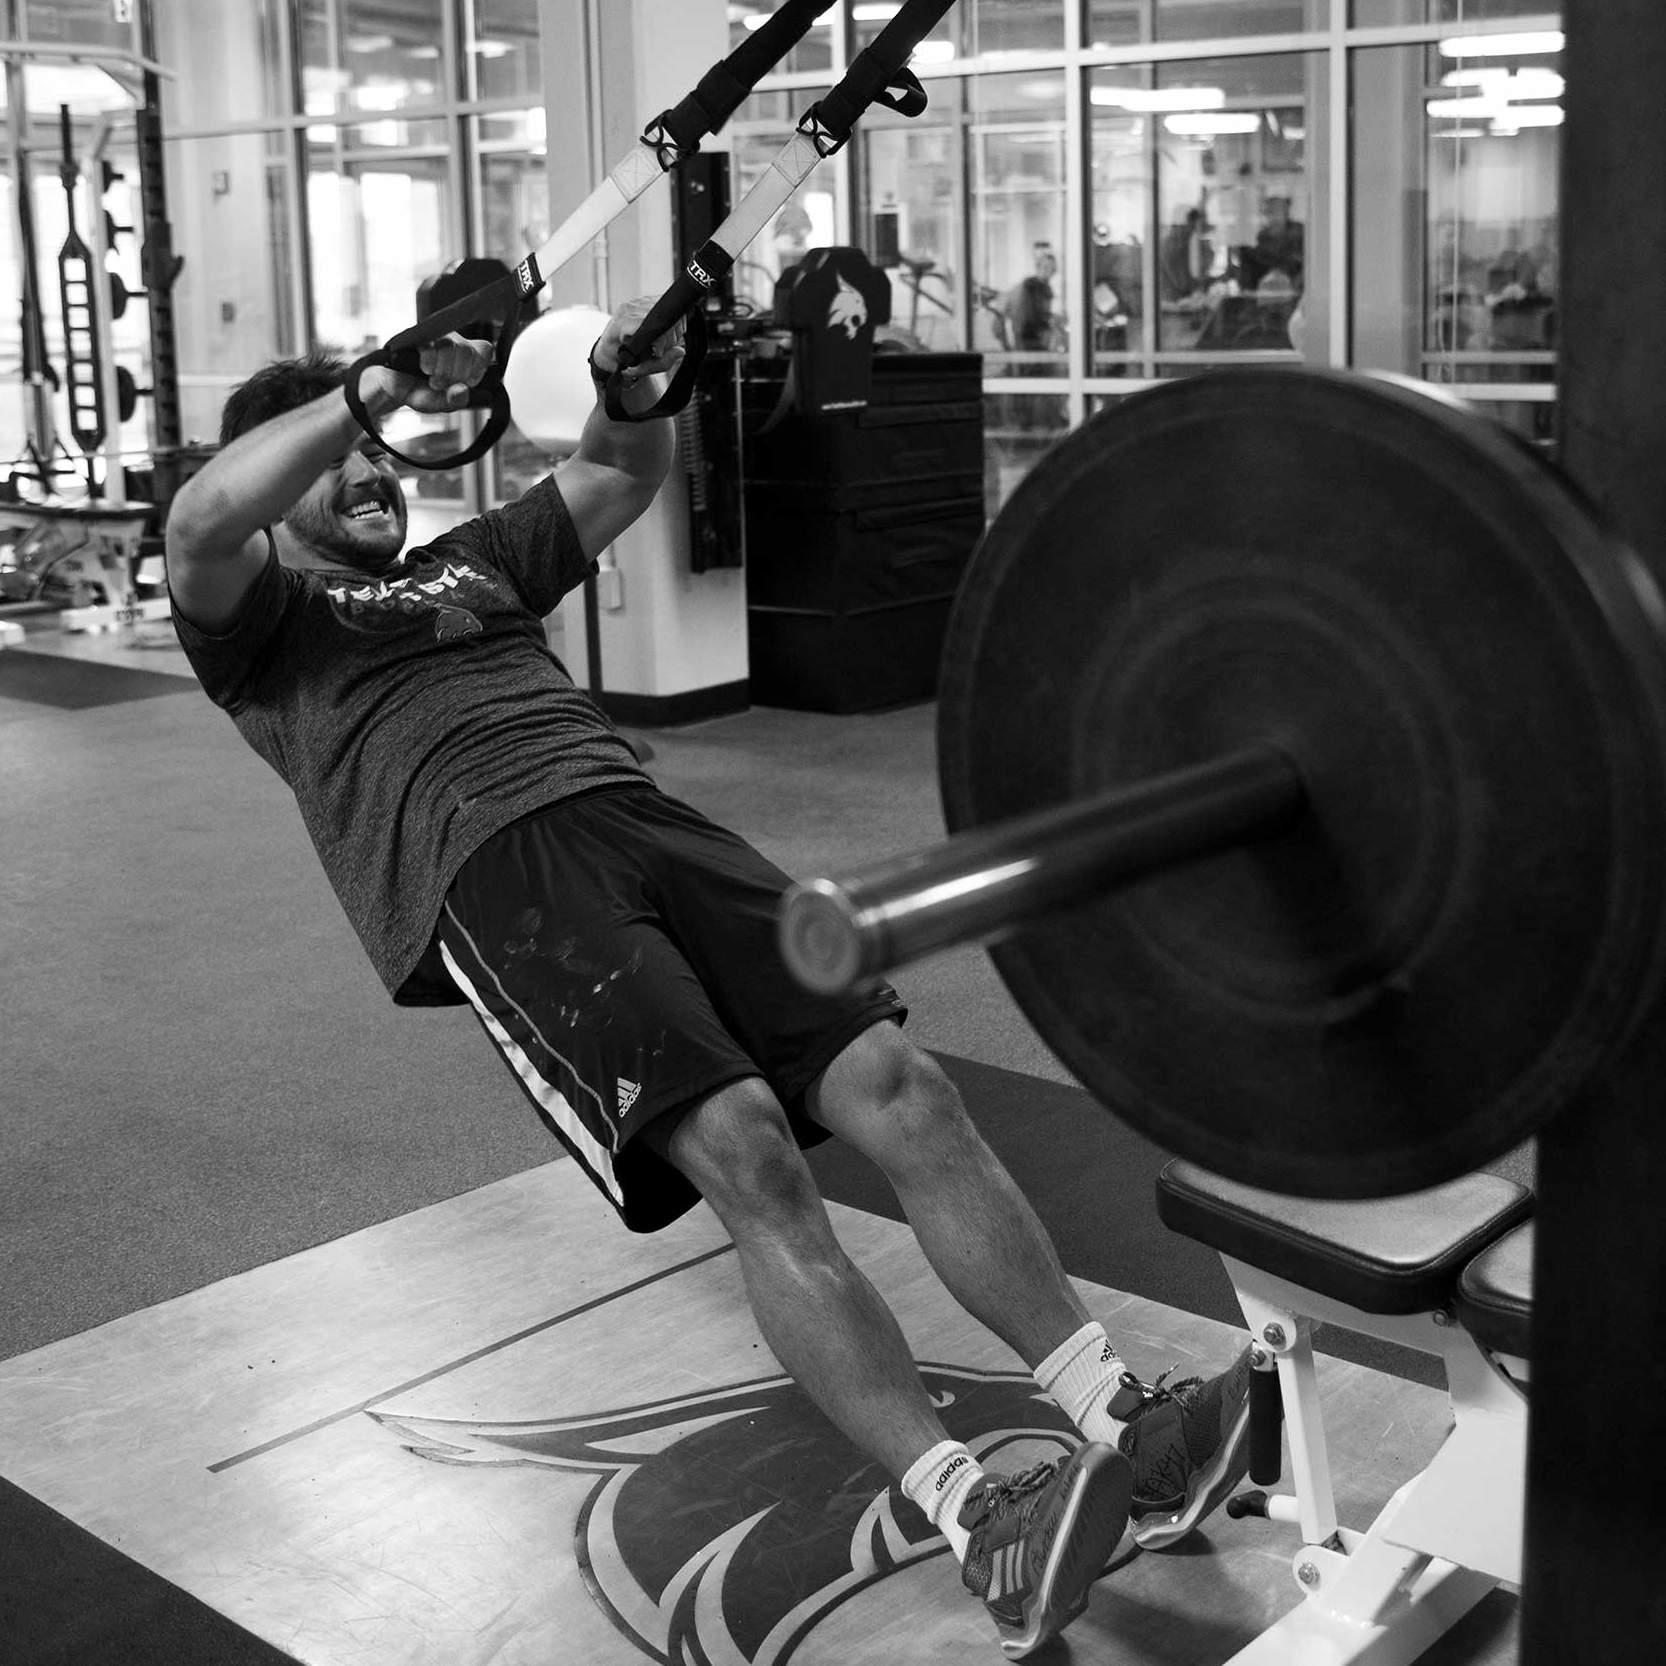 AJ Krawczyk lifts a heavy weight